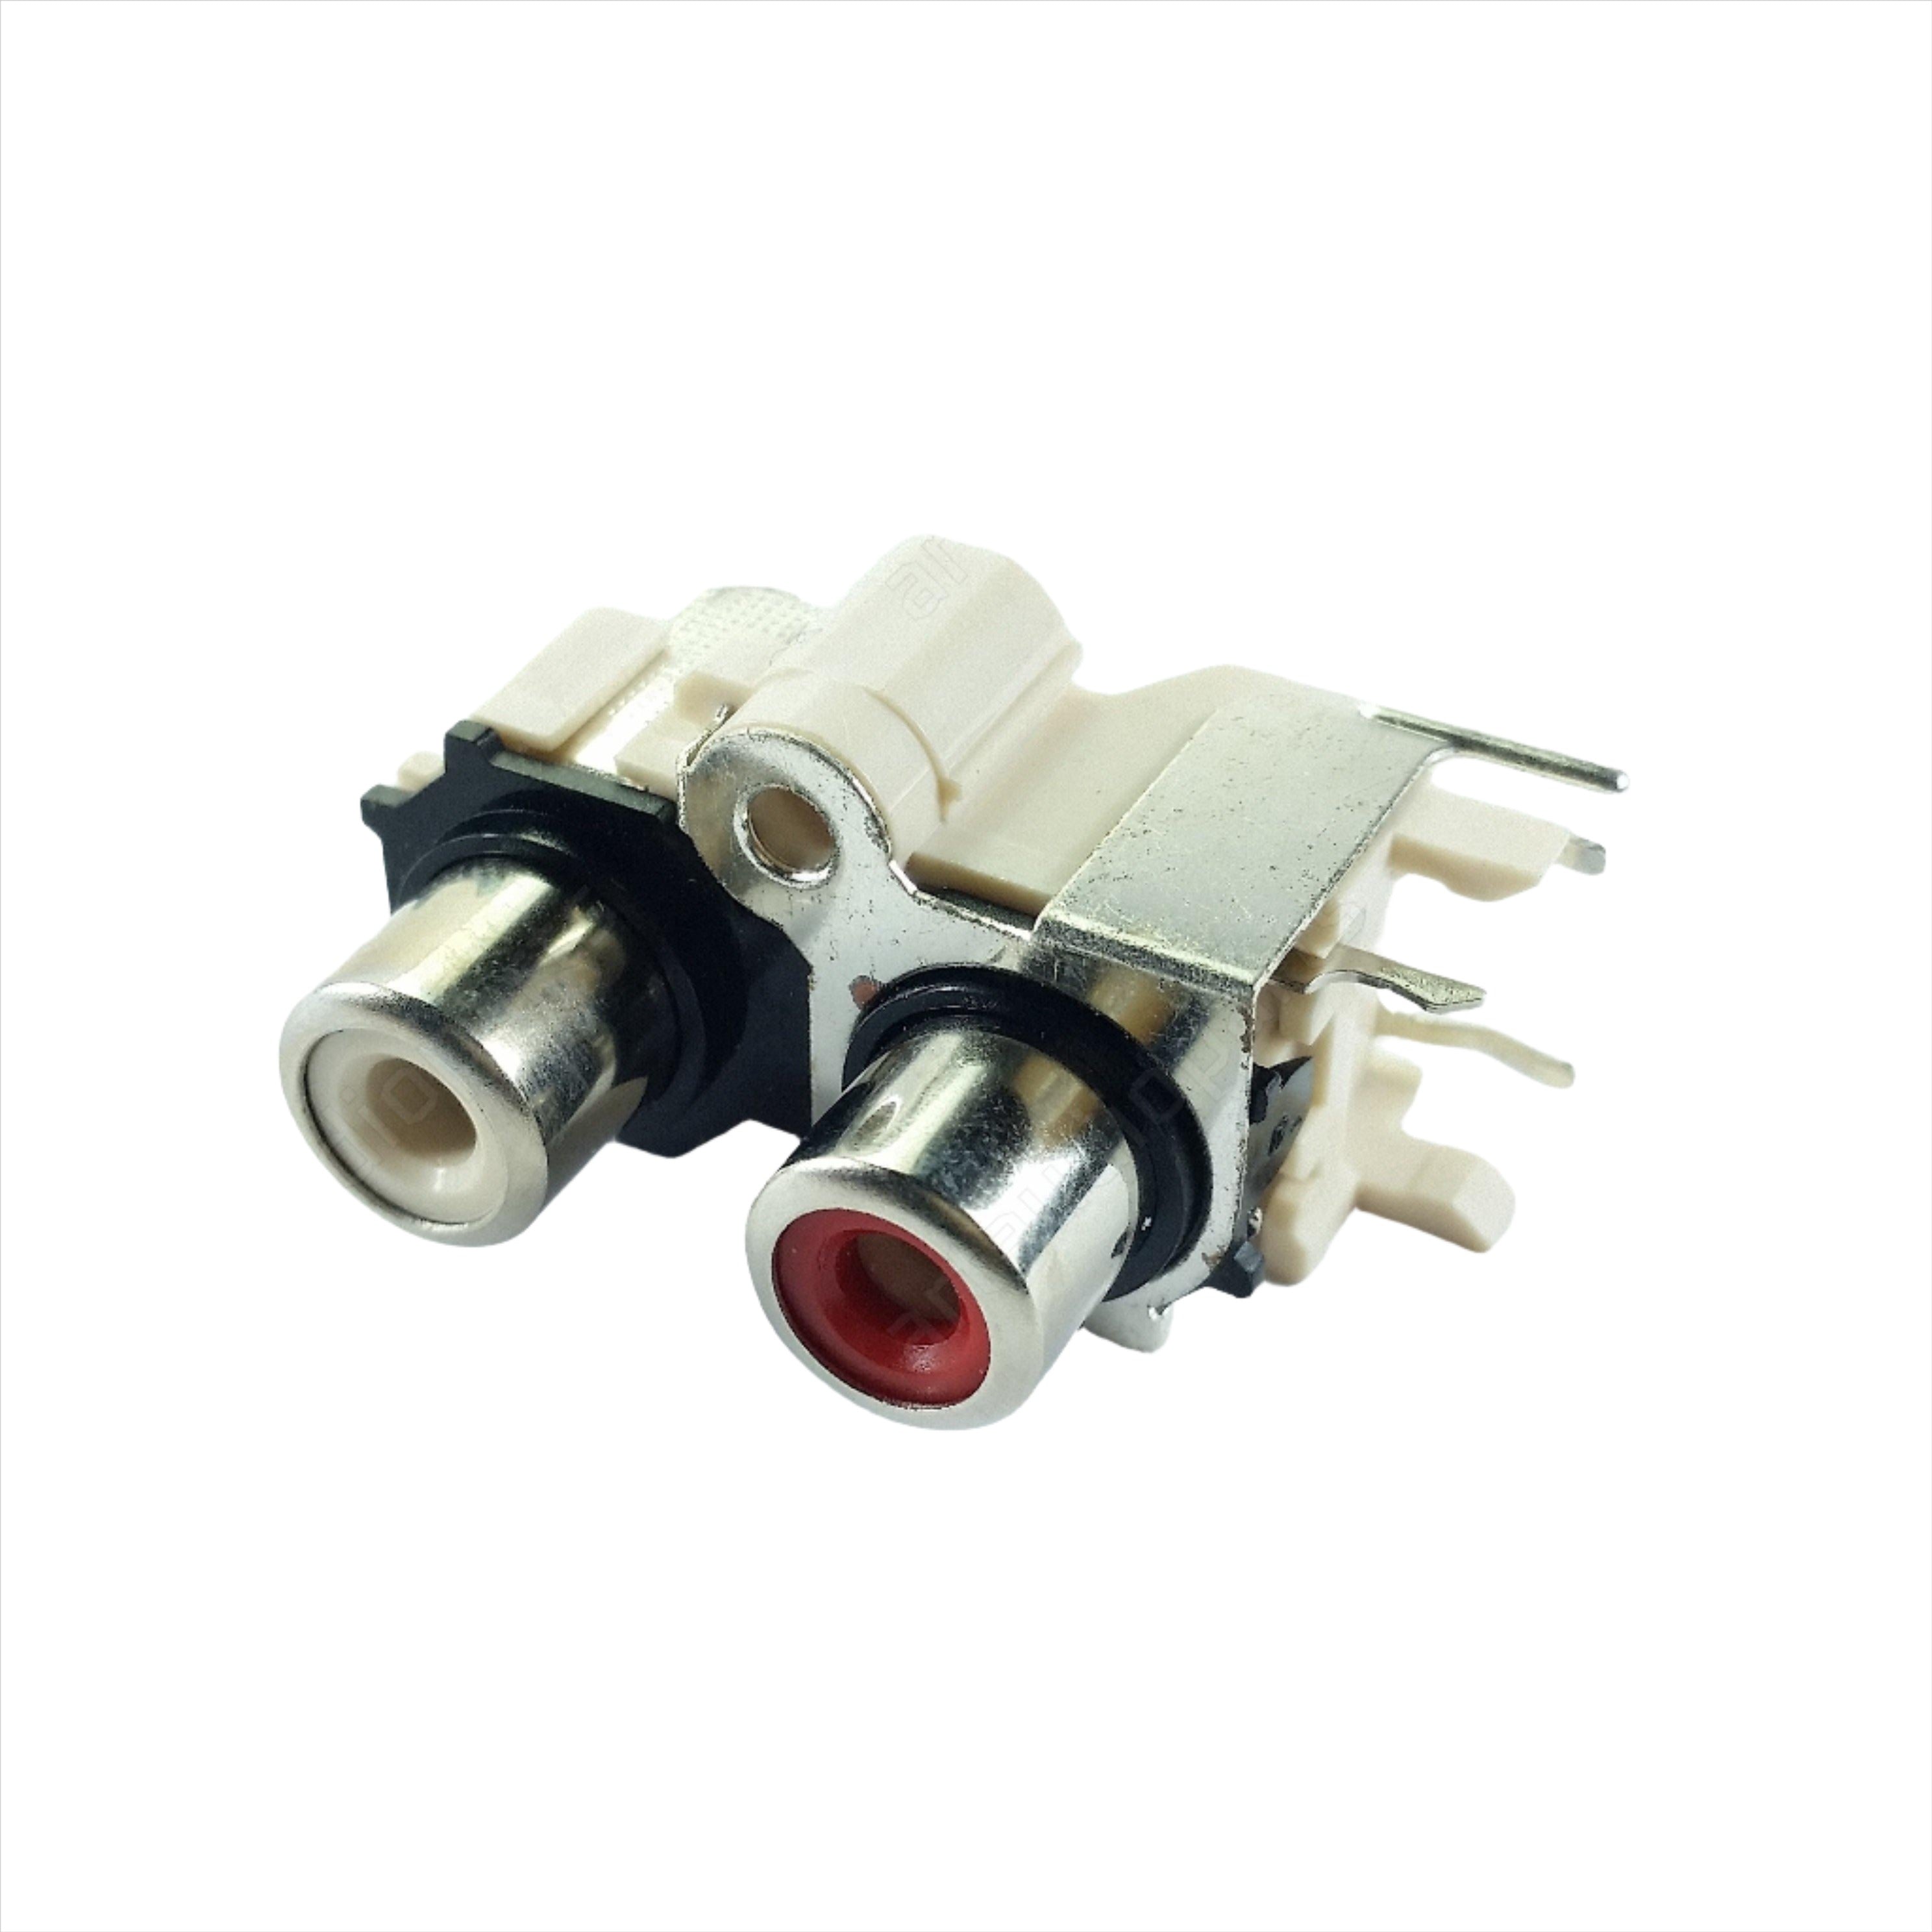 Input jack RCA socket plug aux for Pioneer XDJ-RX XDJ-RR DJM-S3 DJM-250MK2